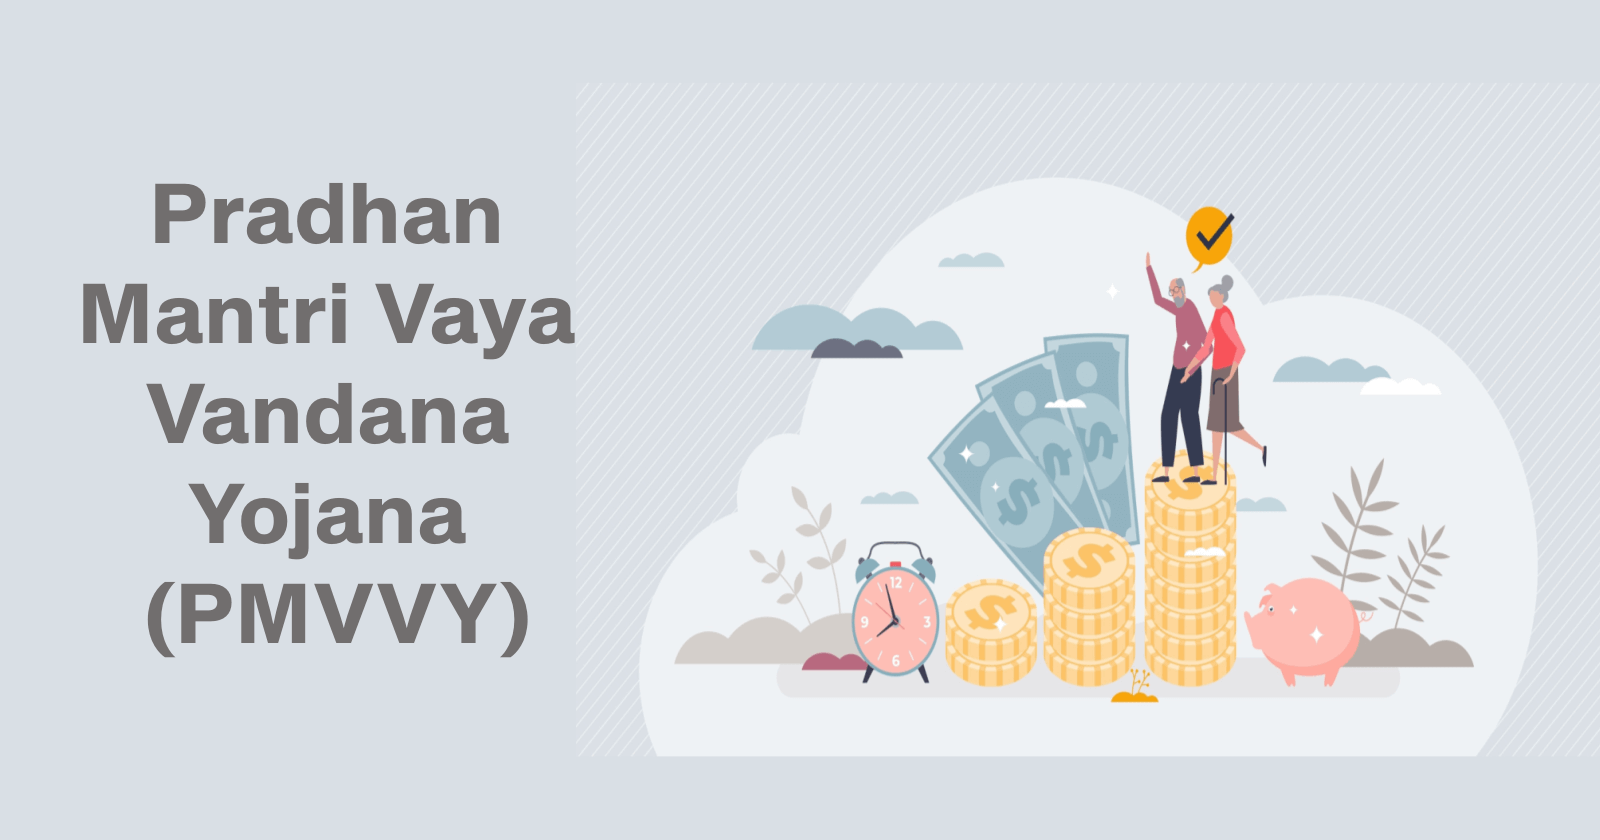 Pradhan Mantri Vaya Vandana Yojana (PMVVY): Benefits, Eligibility & How to Apply